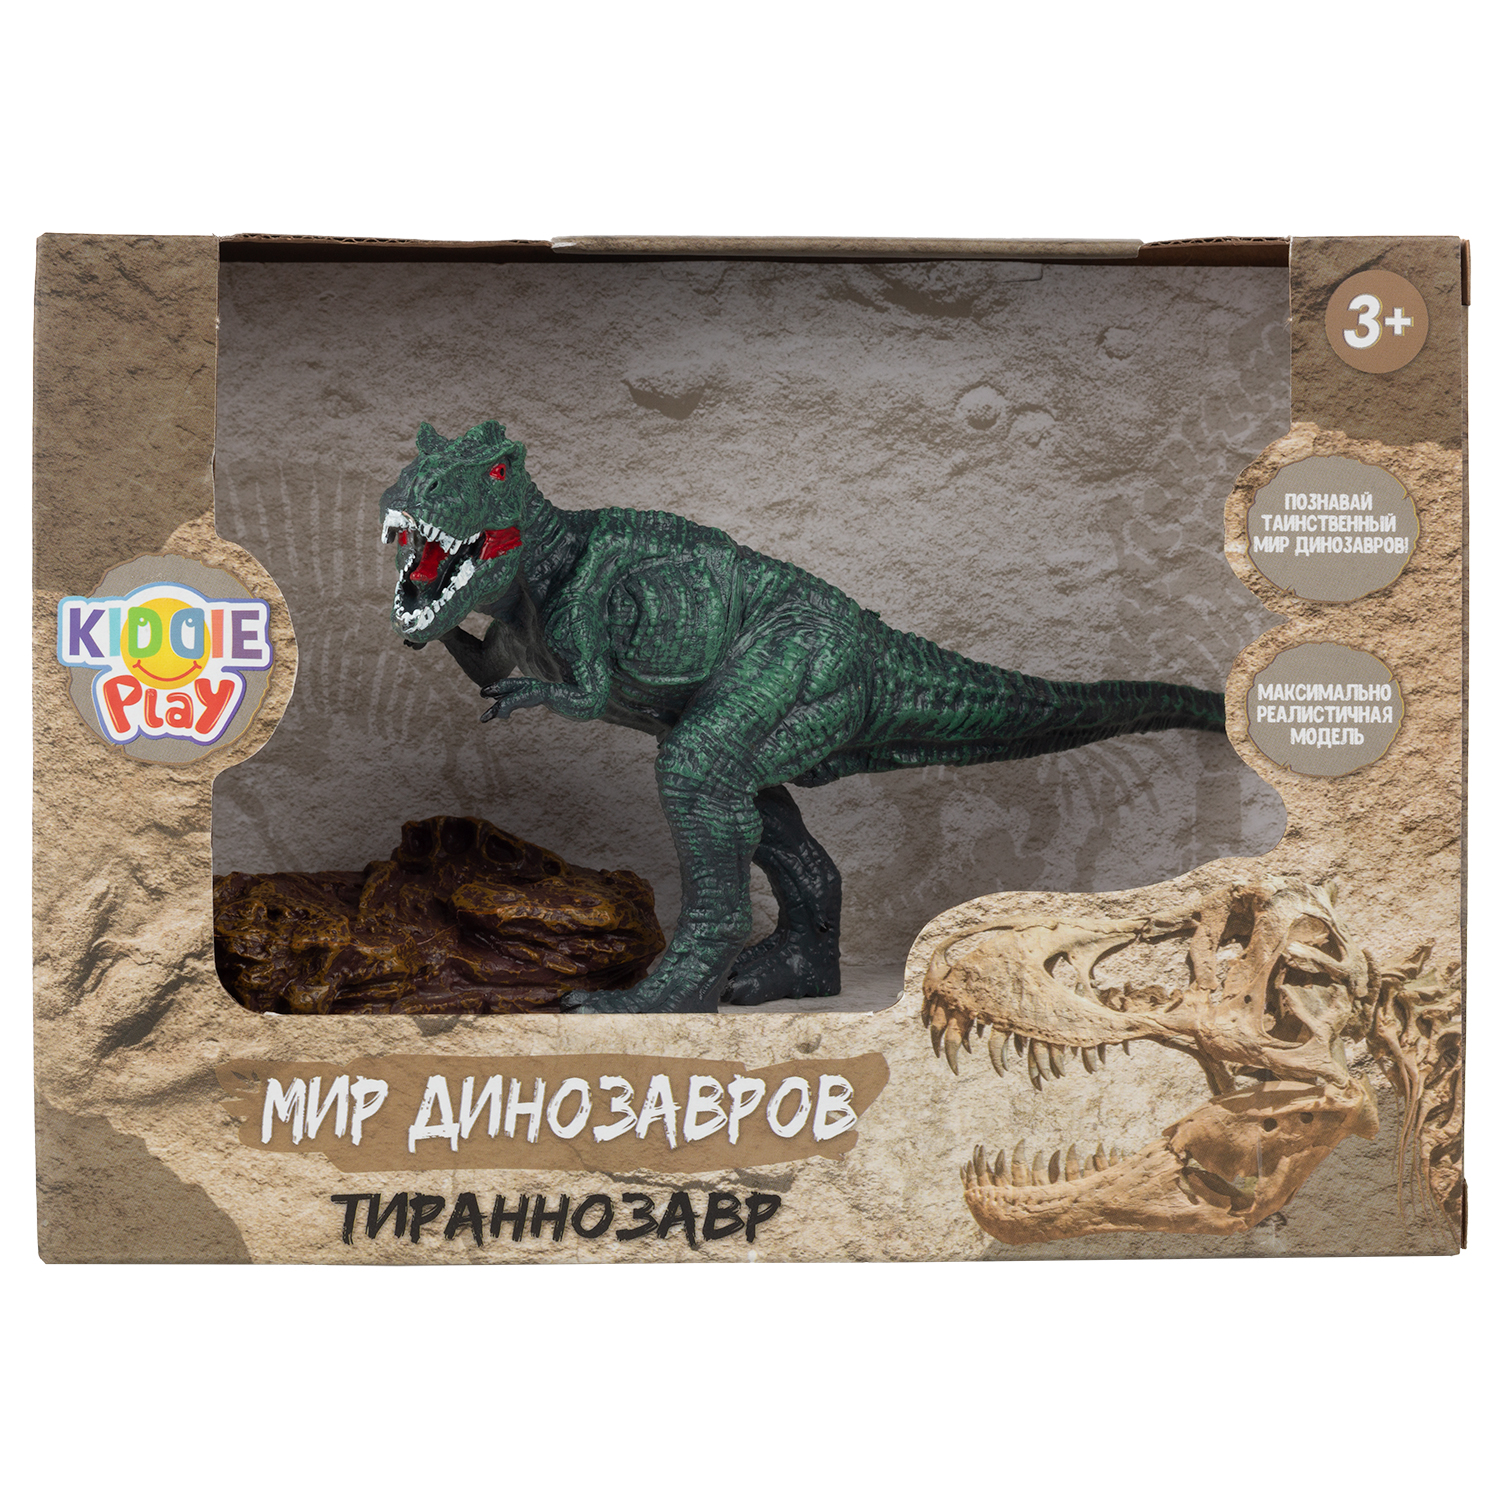 Игрушка KiddiePlay Фигурка динозавра - Тираннозавр - фото 6